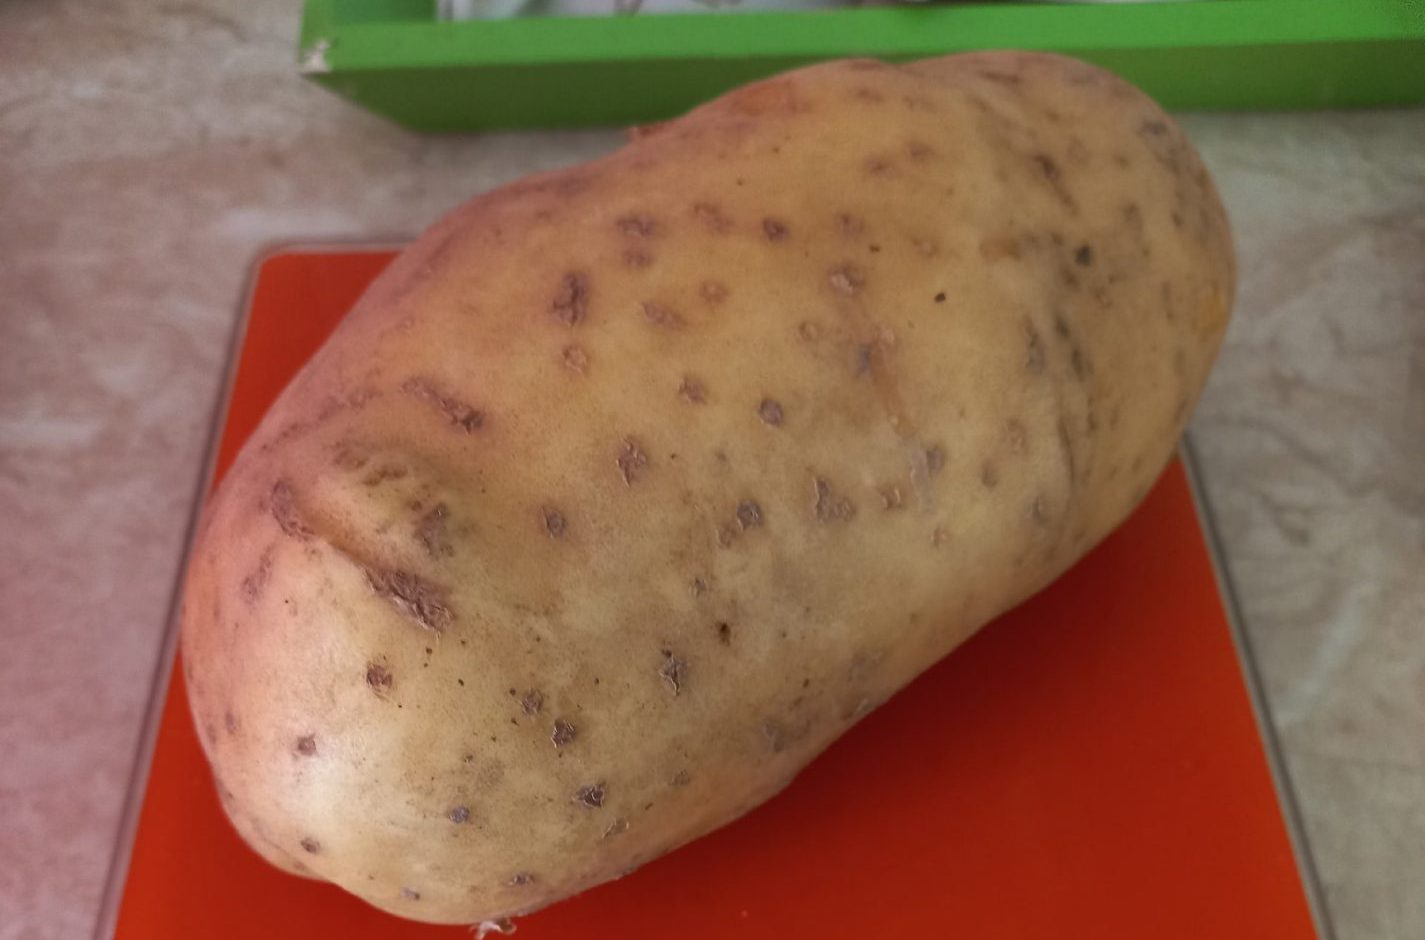 Картошка-переросток выросла у костромской пенсионерки